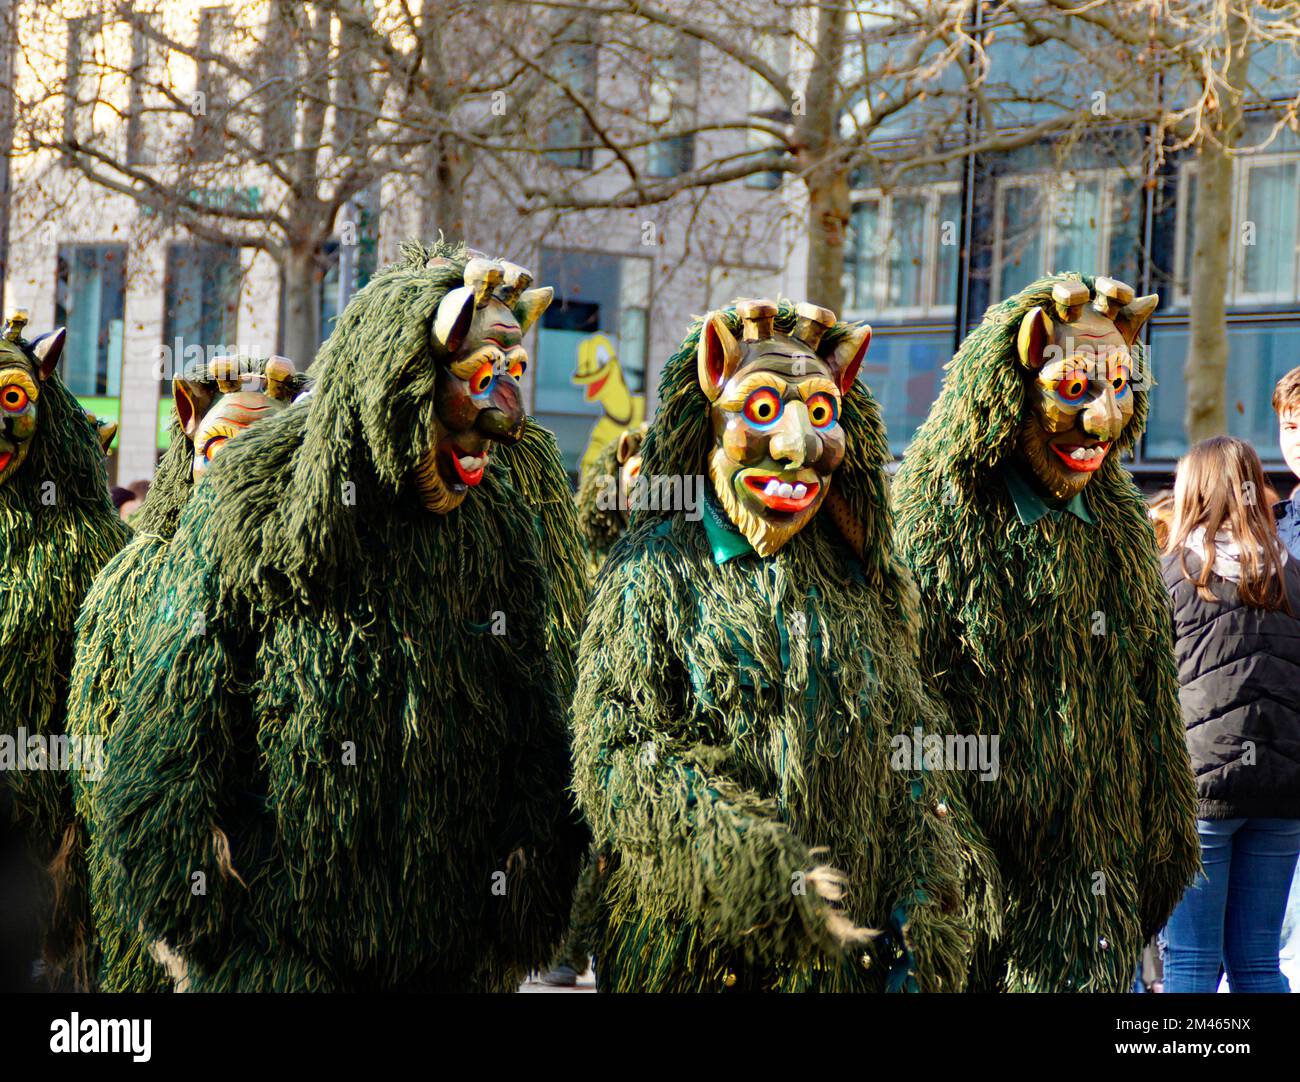 Persone vestite con abiti e maschere divertenti che celebrano il tradizionale carnevale della Shrovetide tedesca chiamato Fasching o Narrensprung (Ulm, Germania) Foto Stock